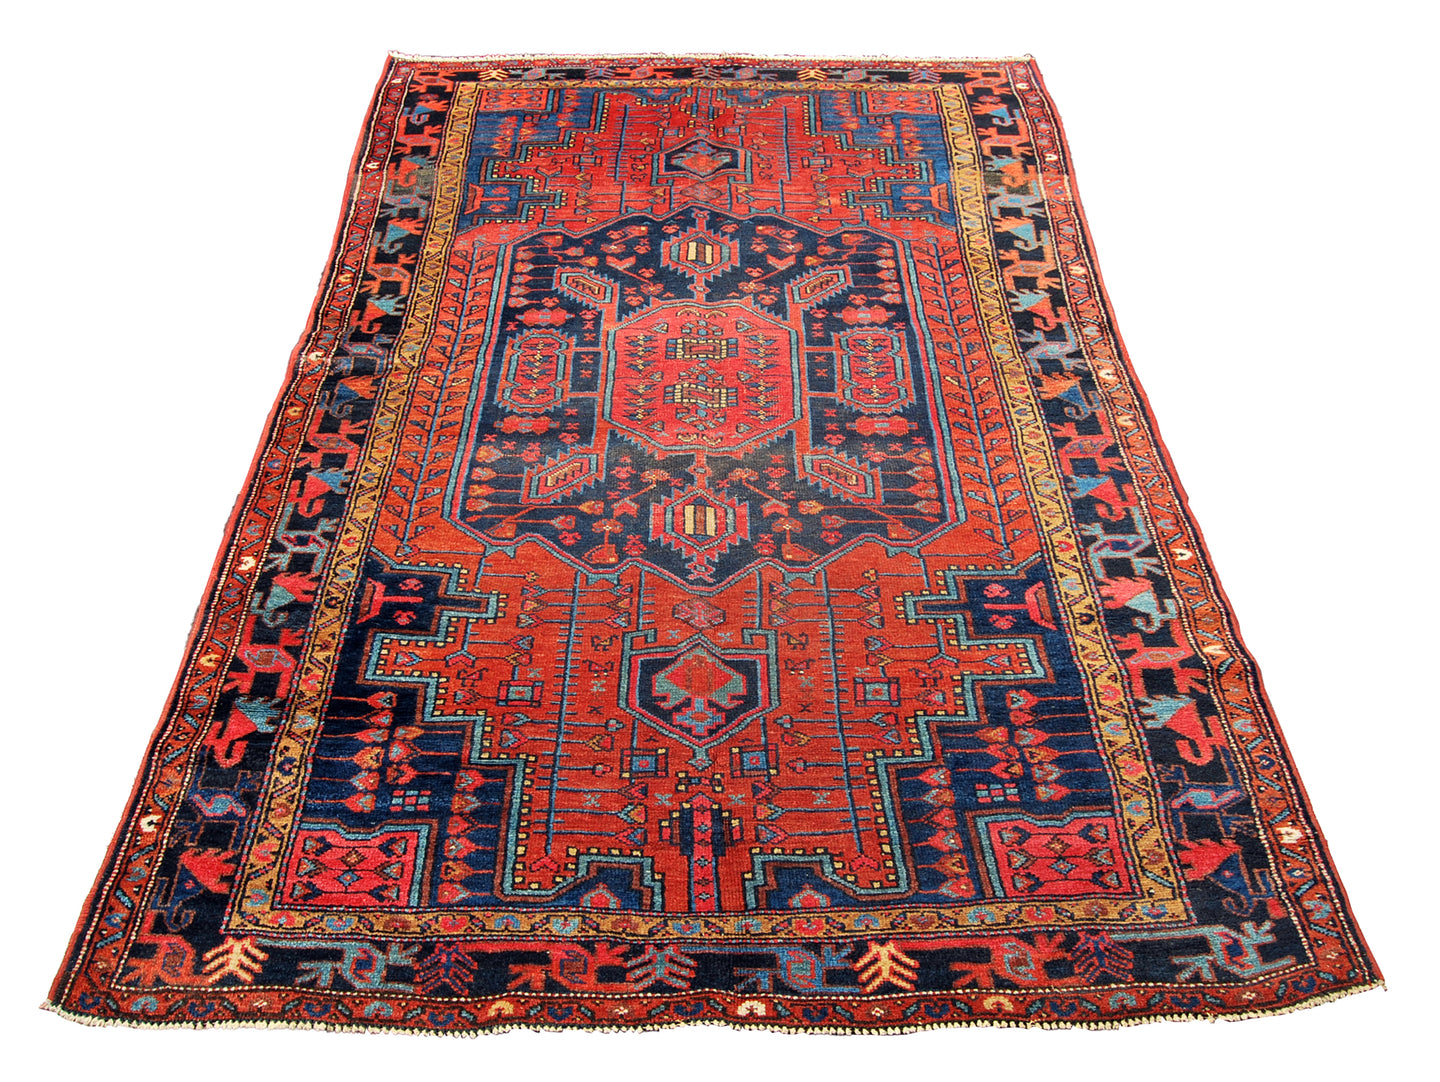 Original Hand Made Carpets CM 226x134